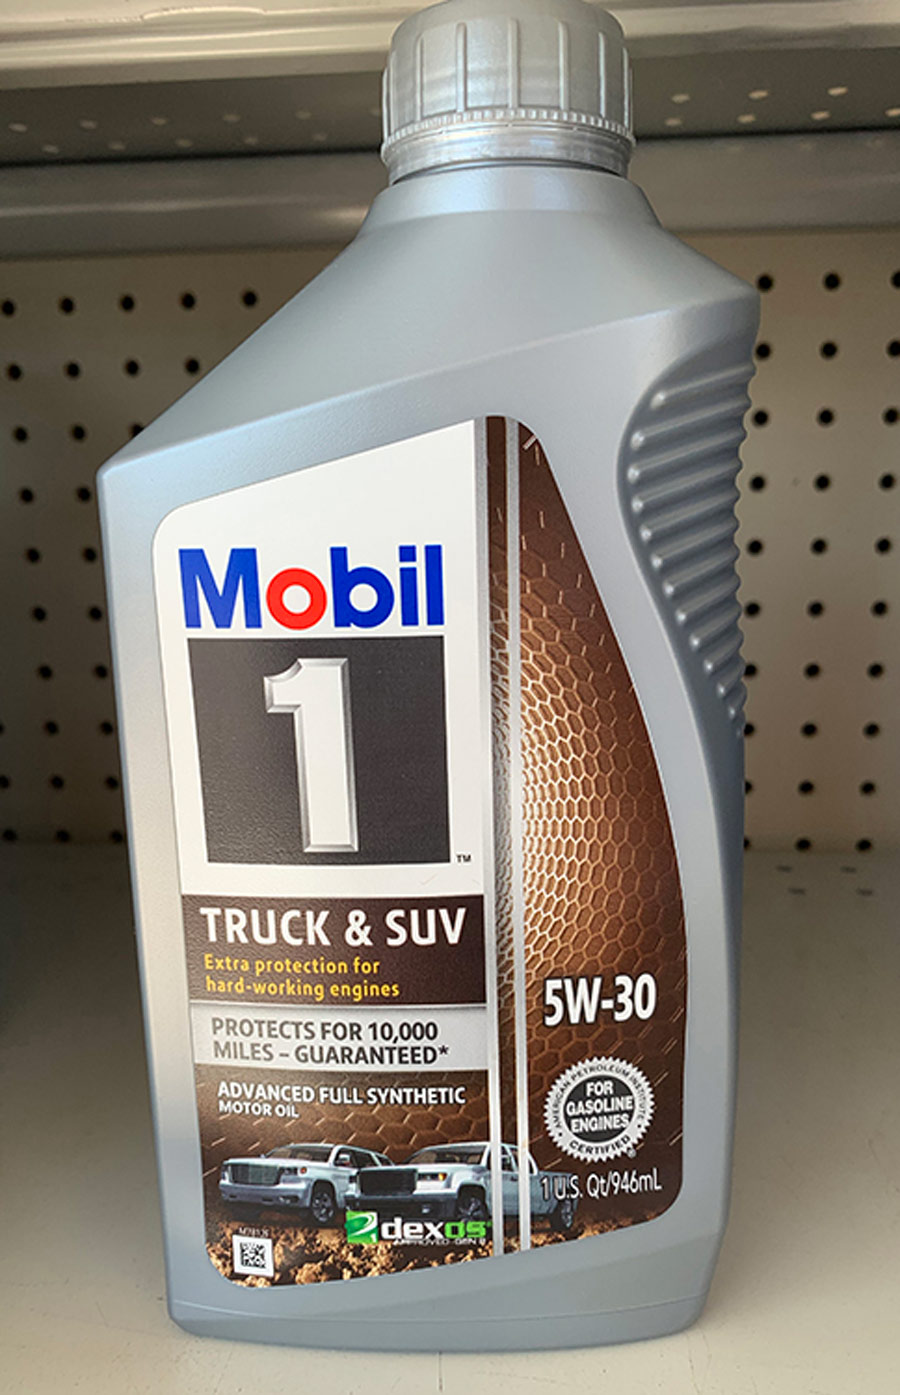 Bottle of Mobil Oil